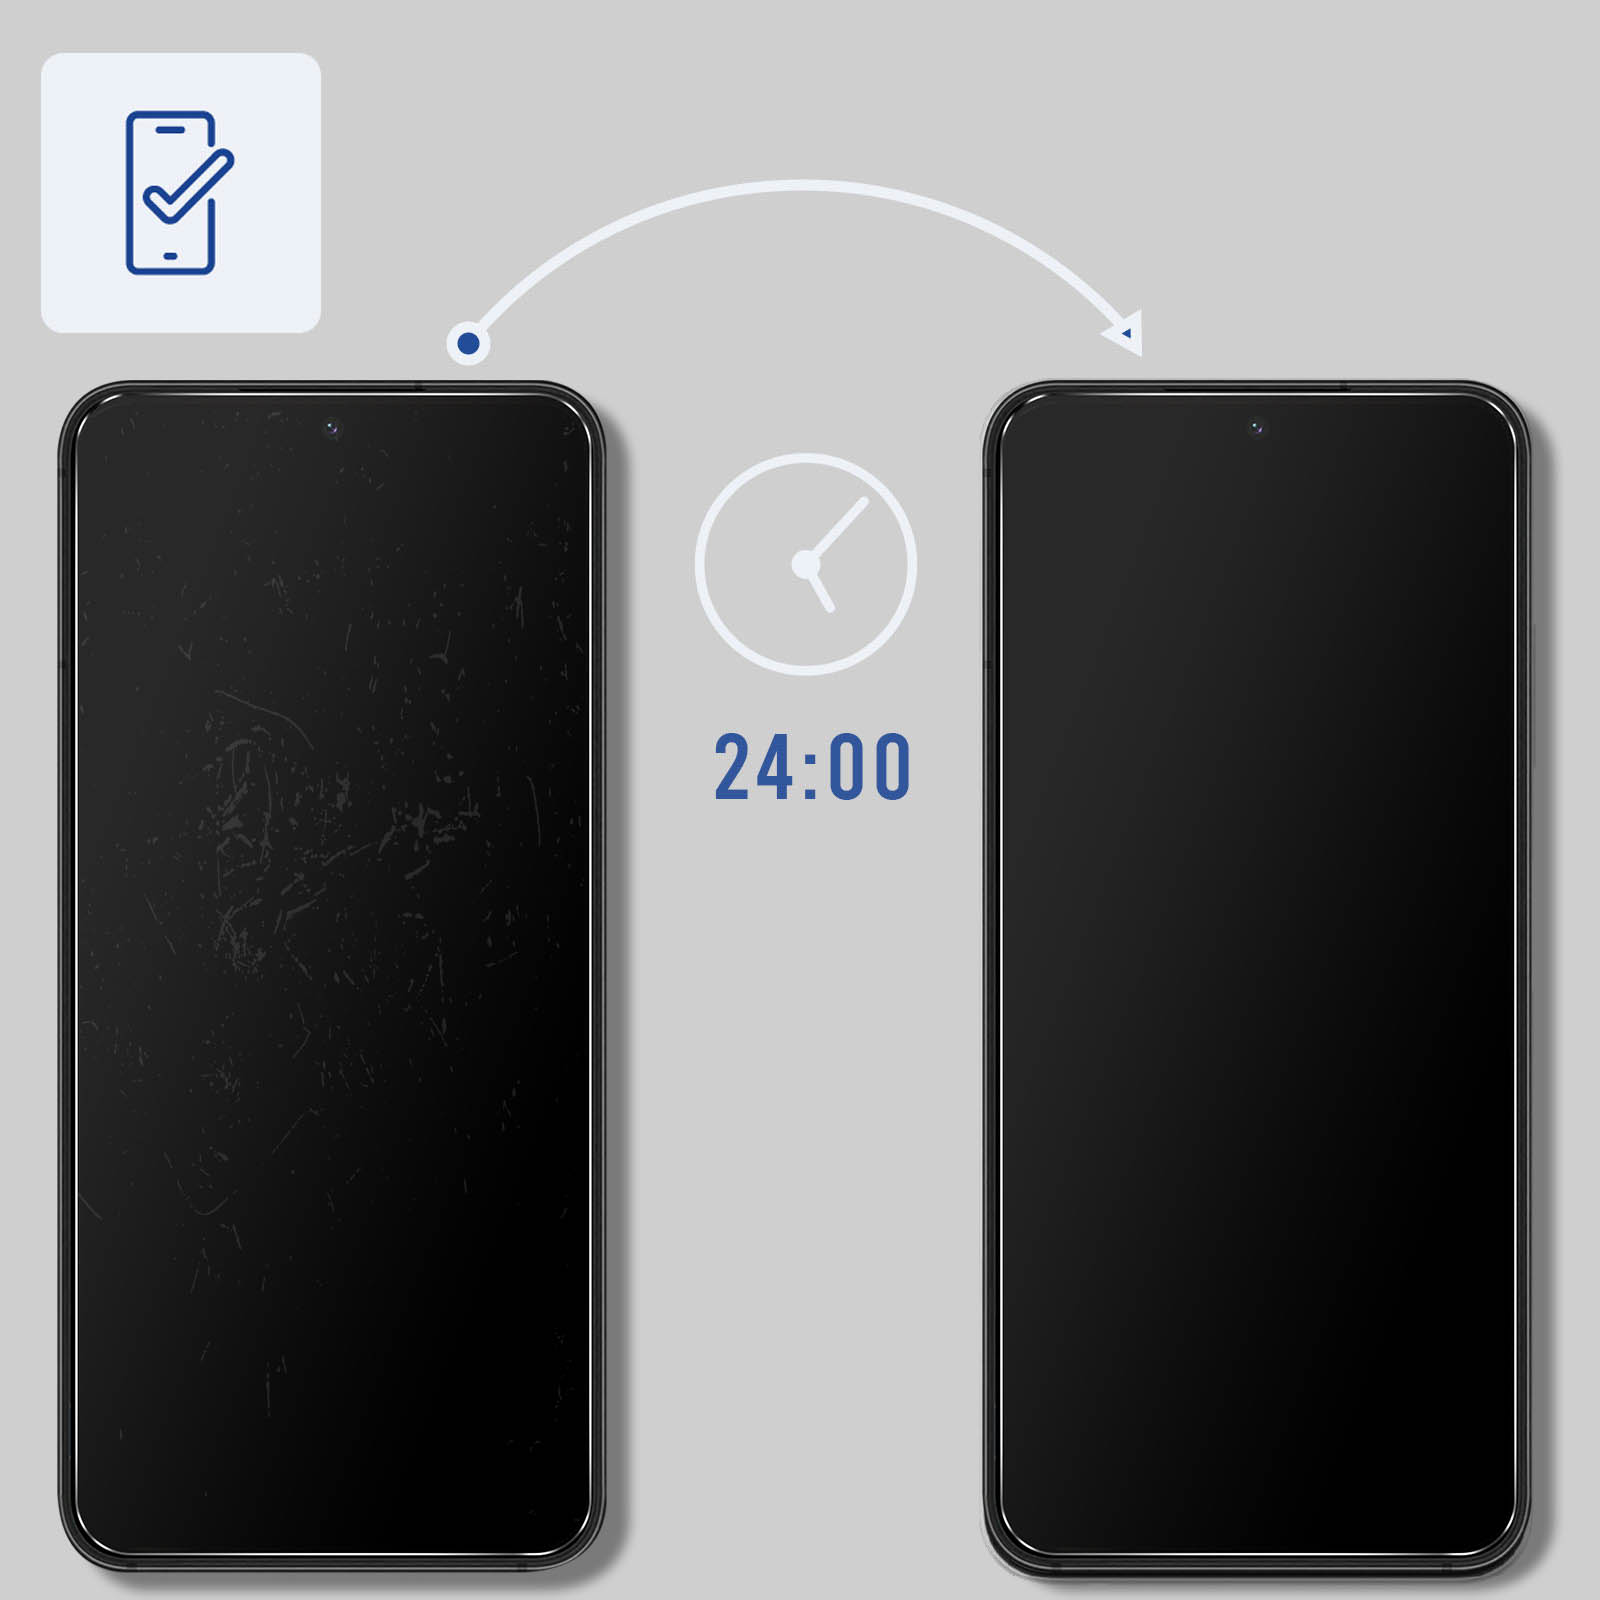 3MK Samsung Galaxy S22+ Folie(für Samsung S22+ Samsung - 3mk 5G 5G) Galaxy SilverProtection